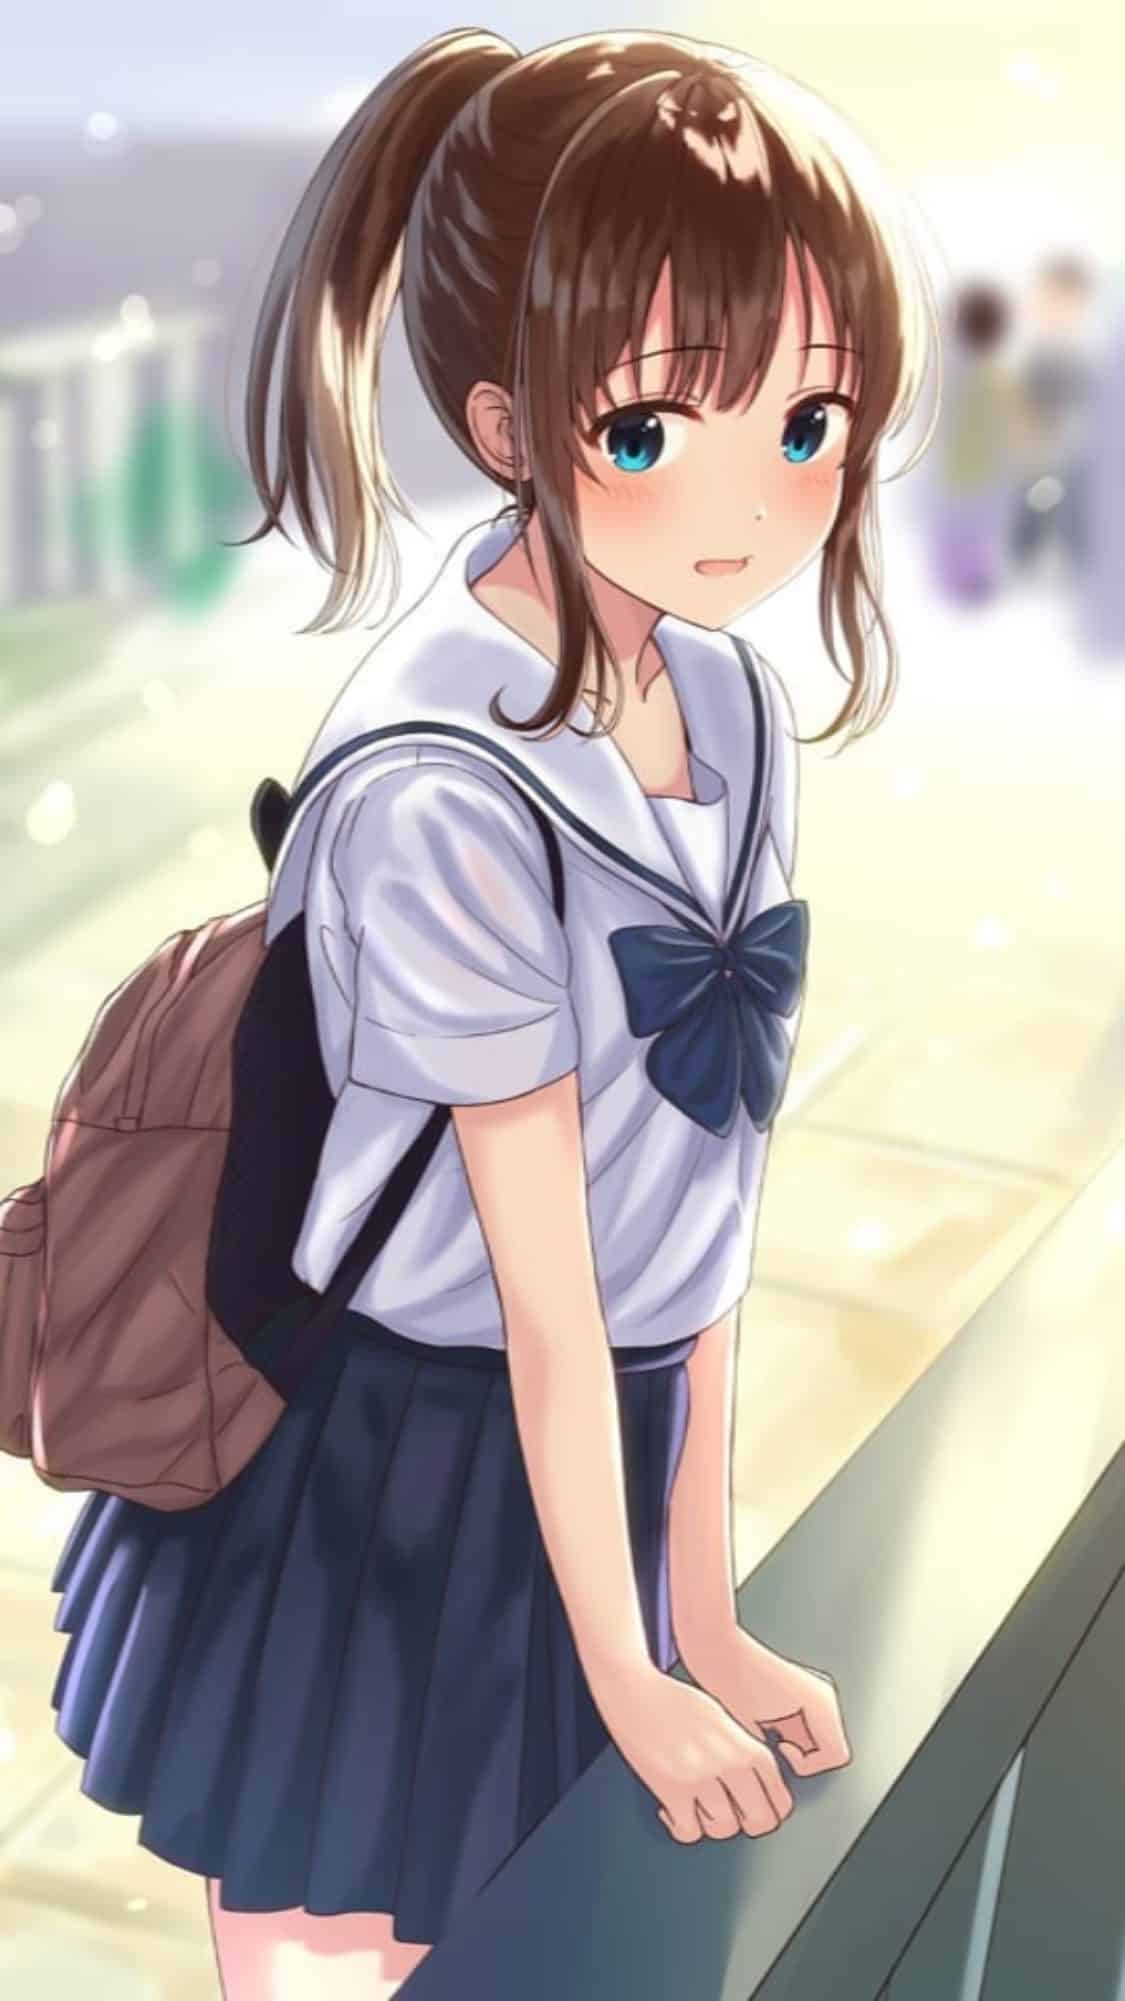 Hình Anime Nữ Học Sinh xinh tươi xứng đáng yêu